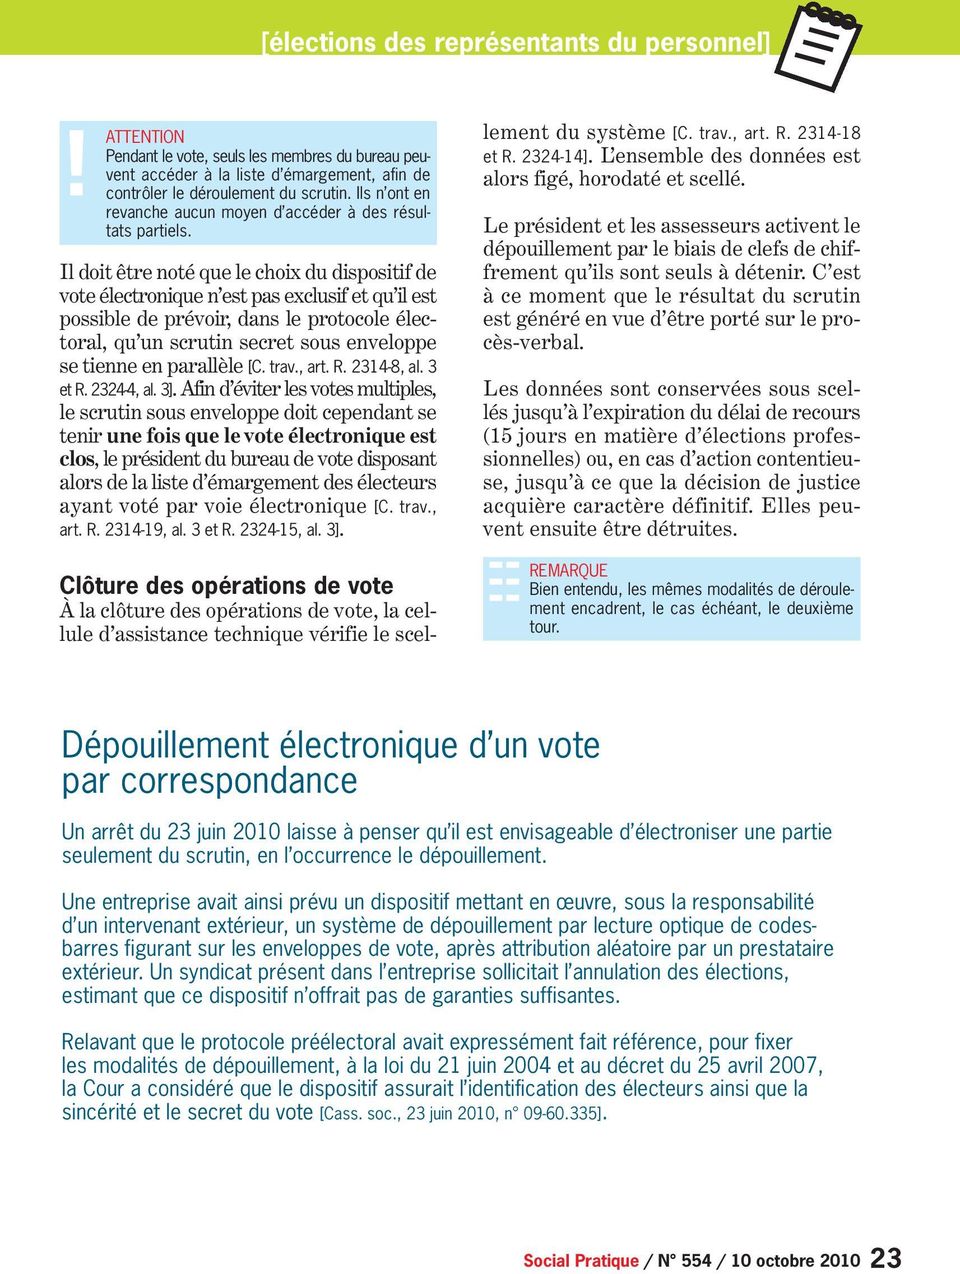 Il doit être noté que le choix du dispositif de vote électronique n est pas exclusif et qu il est possible de prévoir, dans le protocole électoral, qu un scrutin secret sous enveloppe se tienne en